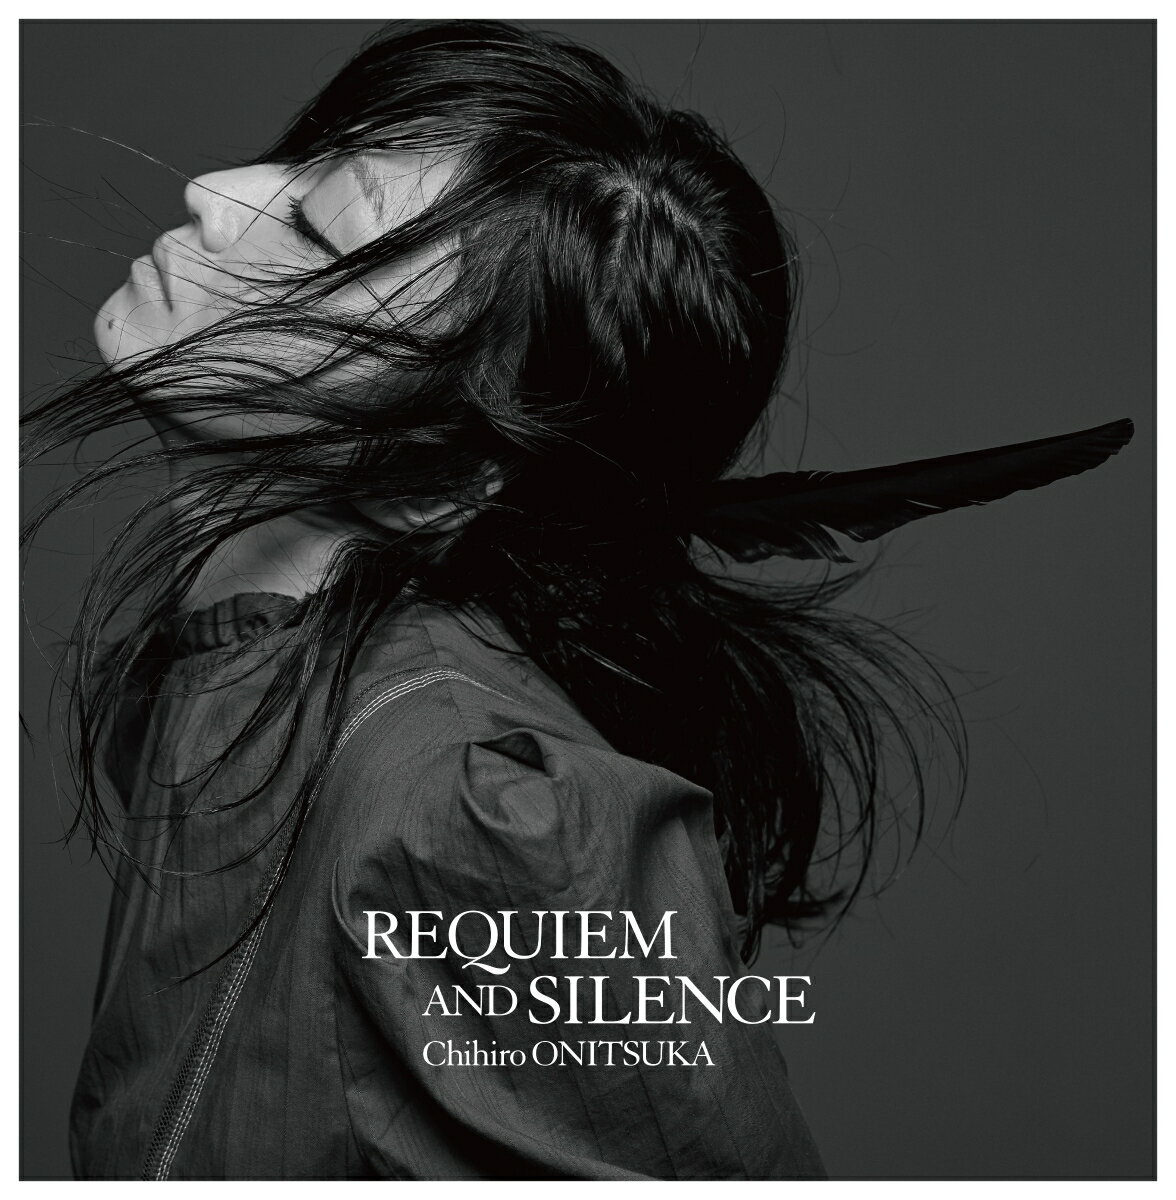 20th anniversary オールタイムベストアルバム「REQUIEM AND SILENCE」 (プレミアム・コレクターズ・エディション) (完全生産限定盤)